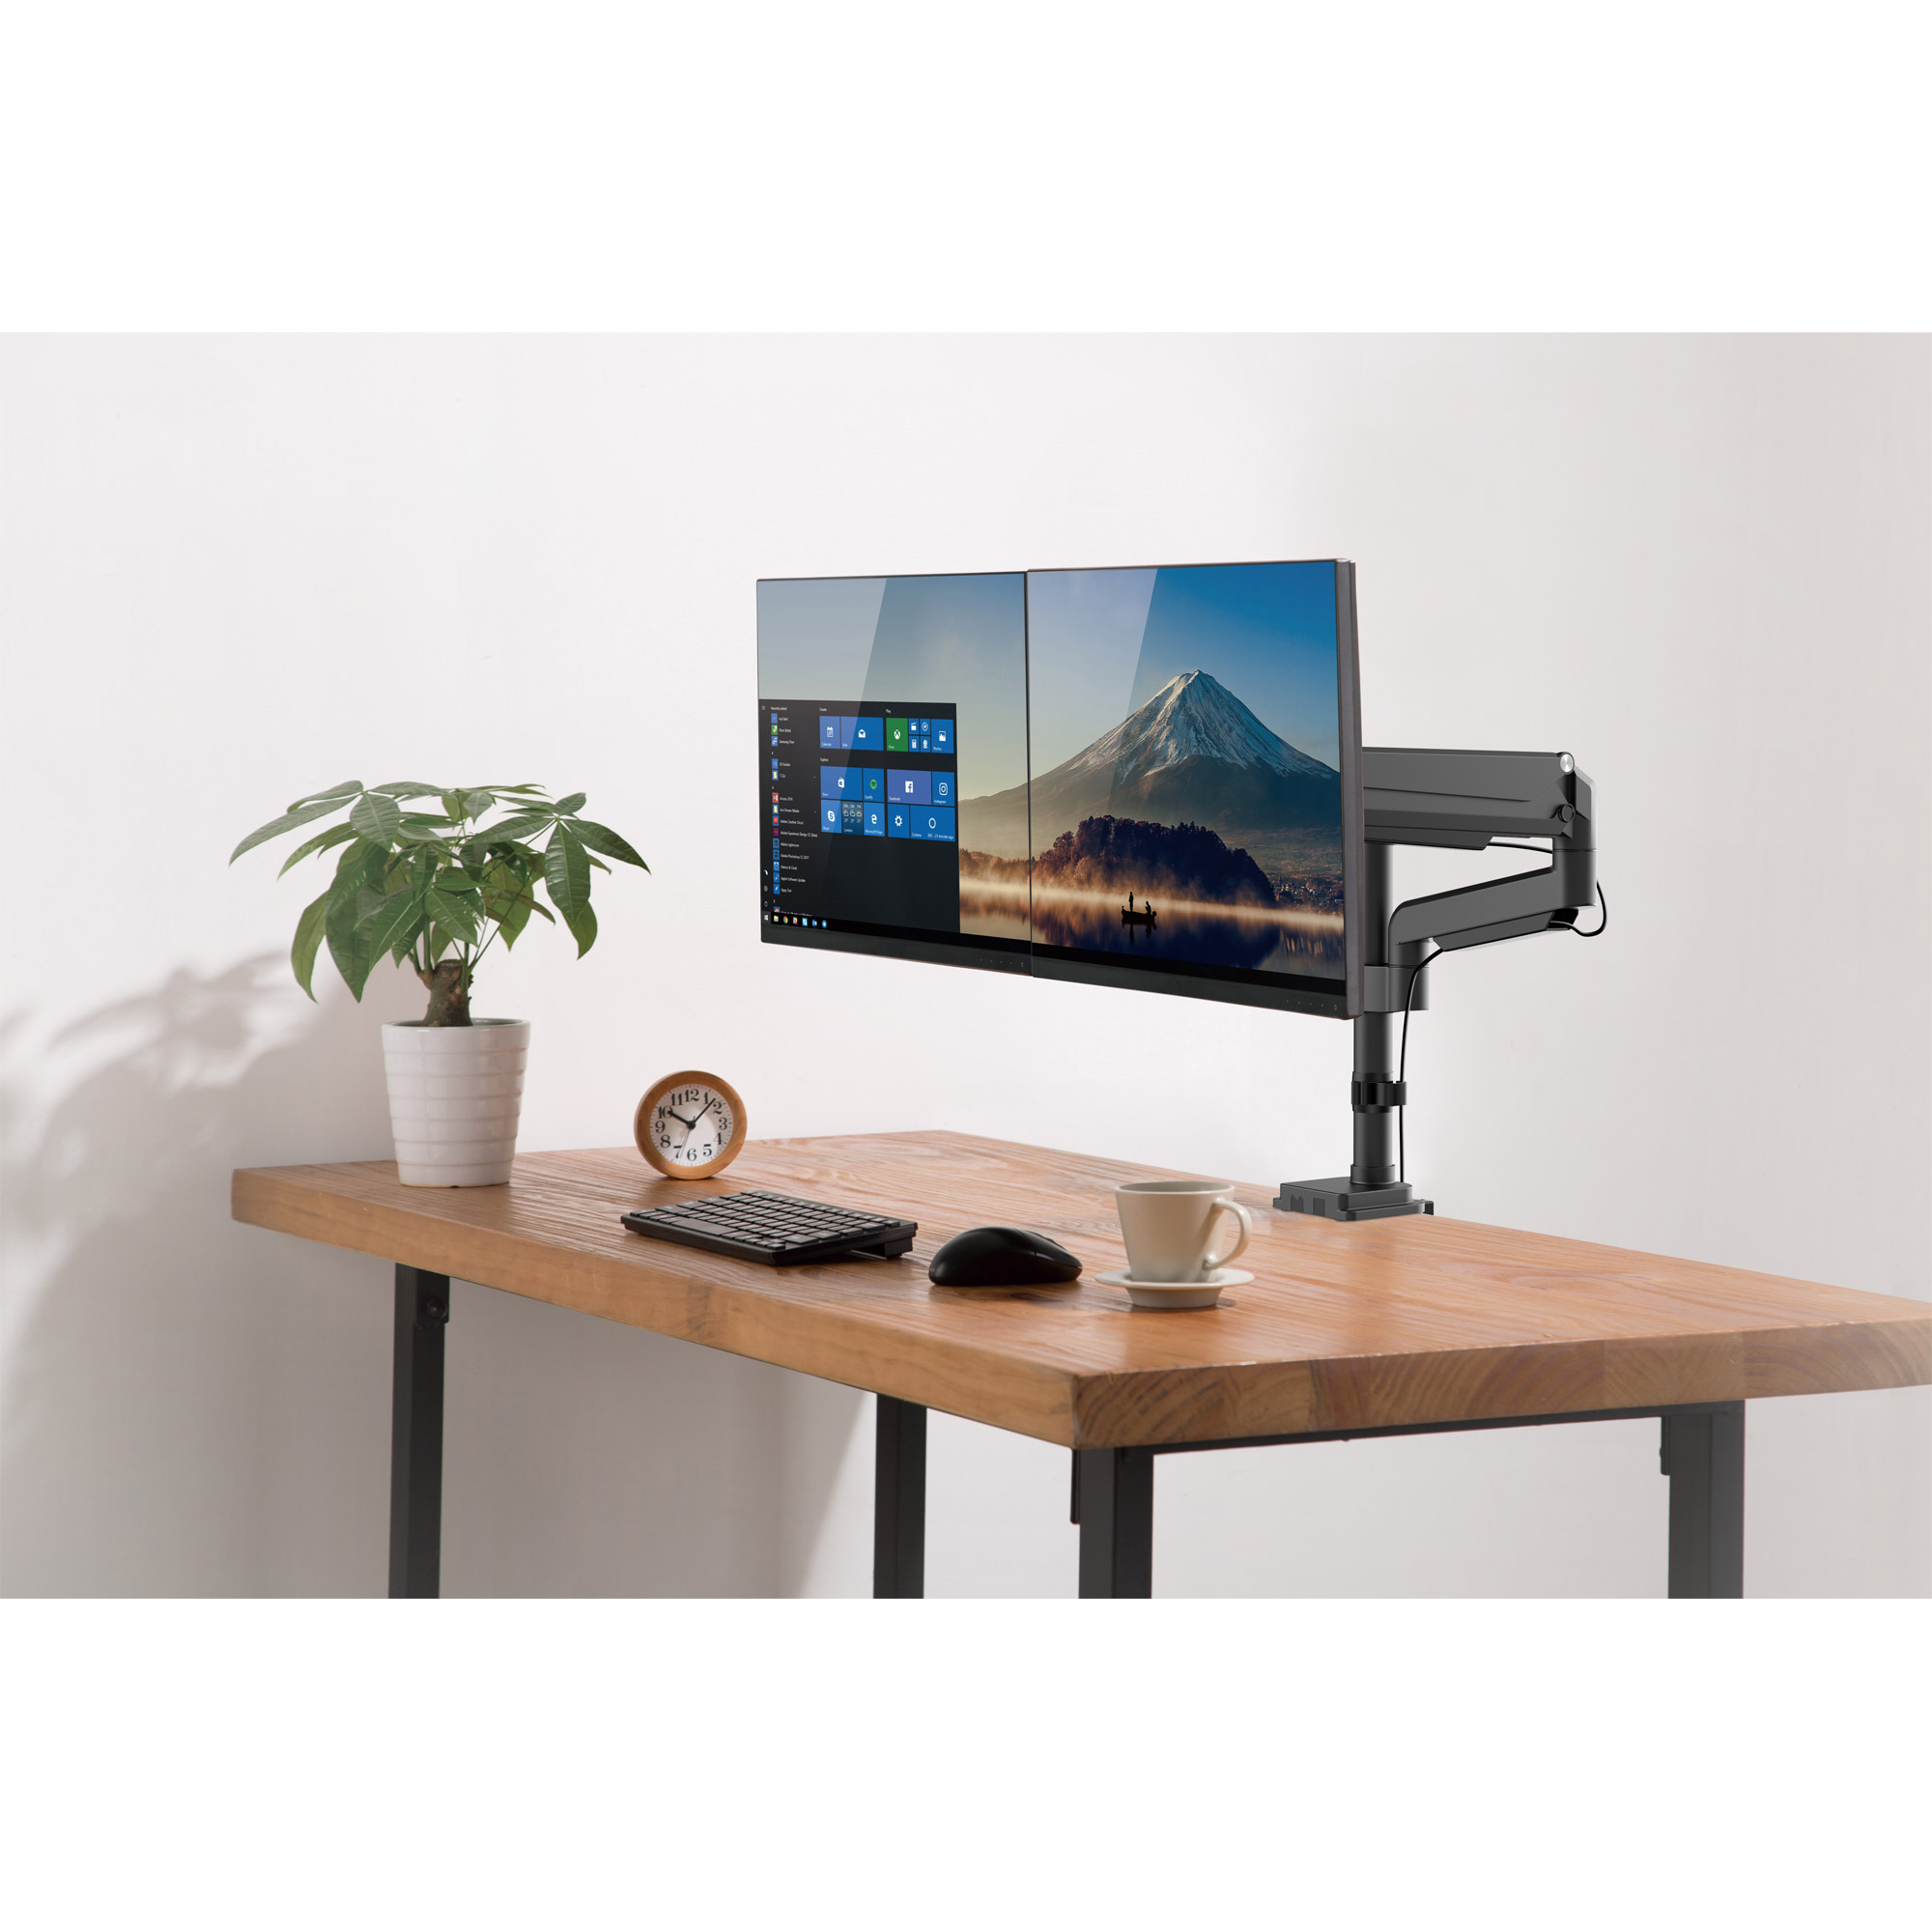 InLine® Tischhalterung mit Lifter, beweglich, für zwei Monitore bis 82cm (32"), max. 9kg